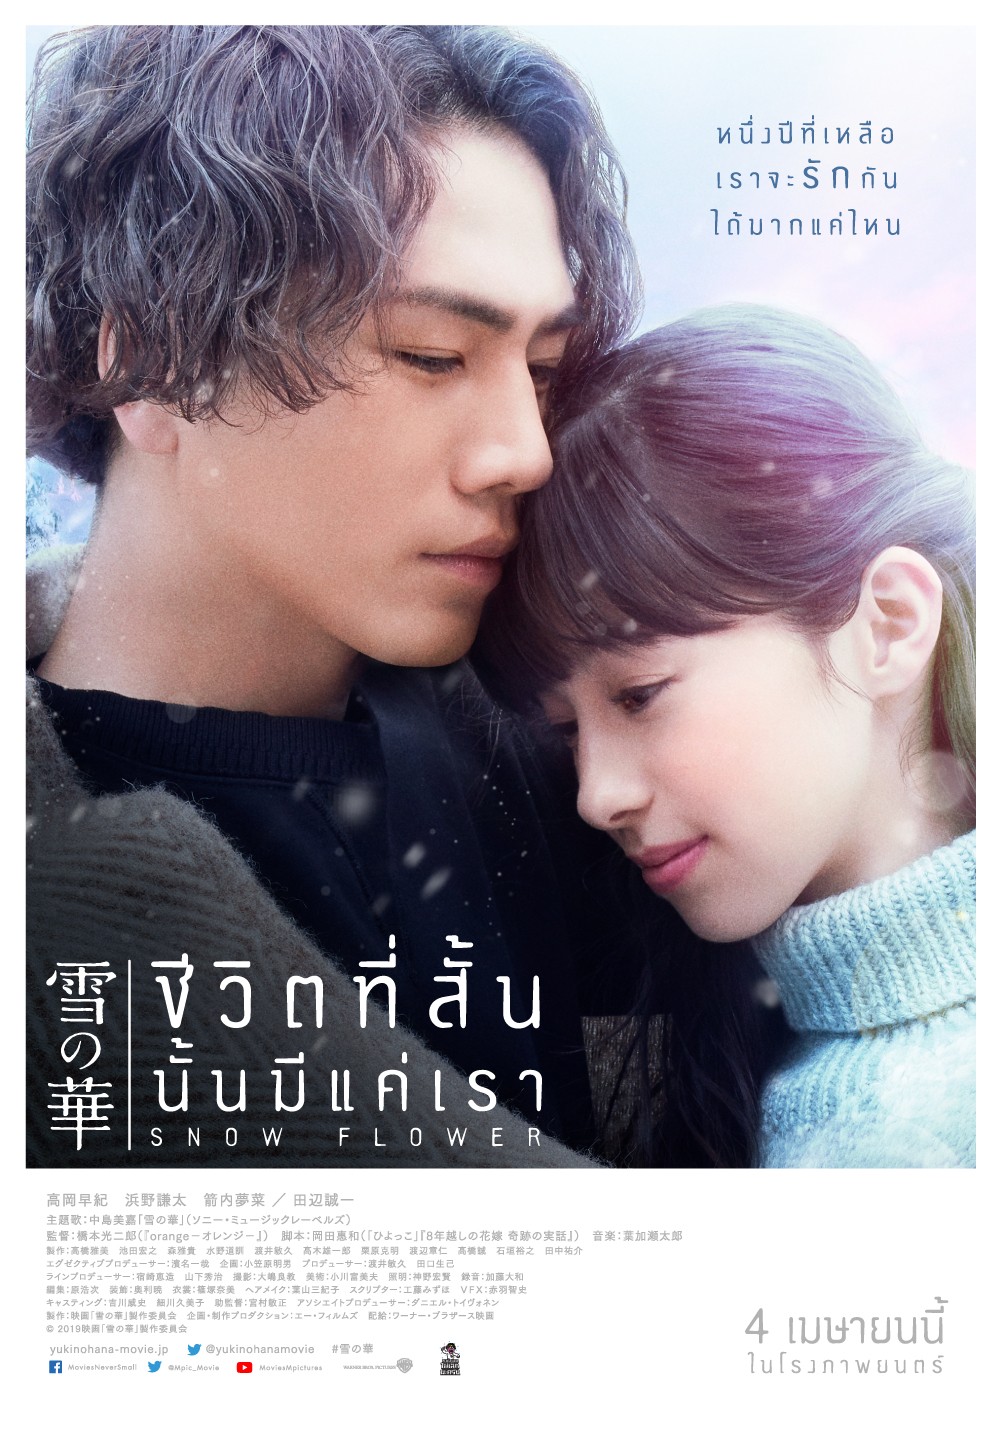 Review] Snow Flower หนังรักญี่ปุ่นที่ดูท่าทางจะเศร้าจับใจ  แต่ดันเป็นหวานกุ๊กกิ๊กซะงั้น! 8/10 - Pantip